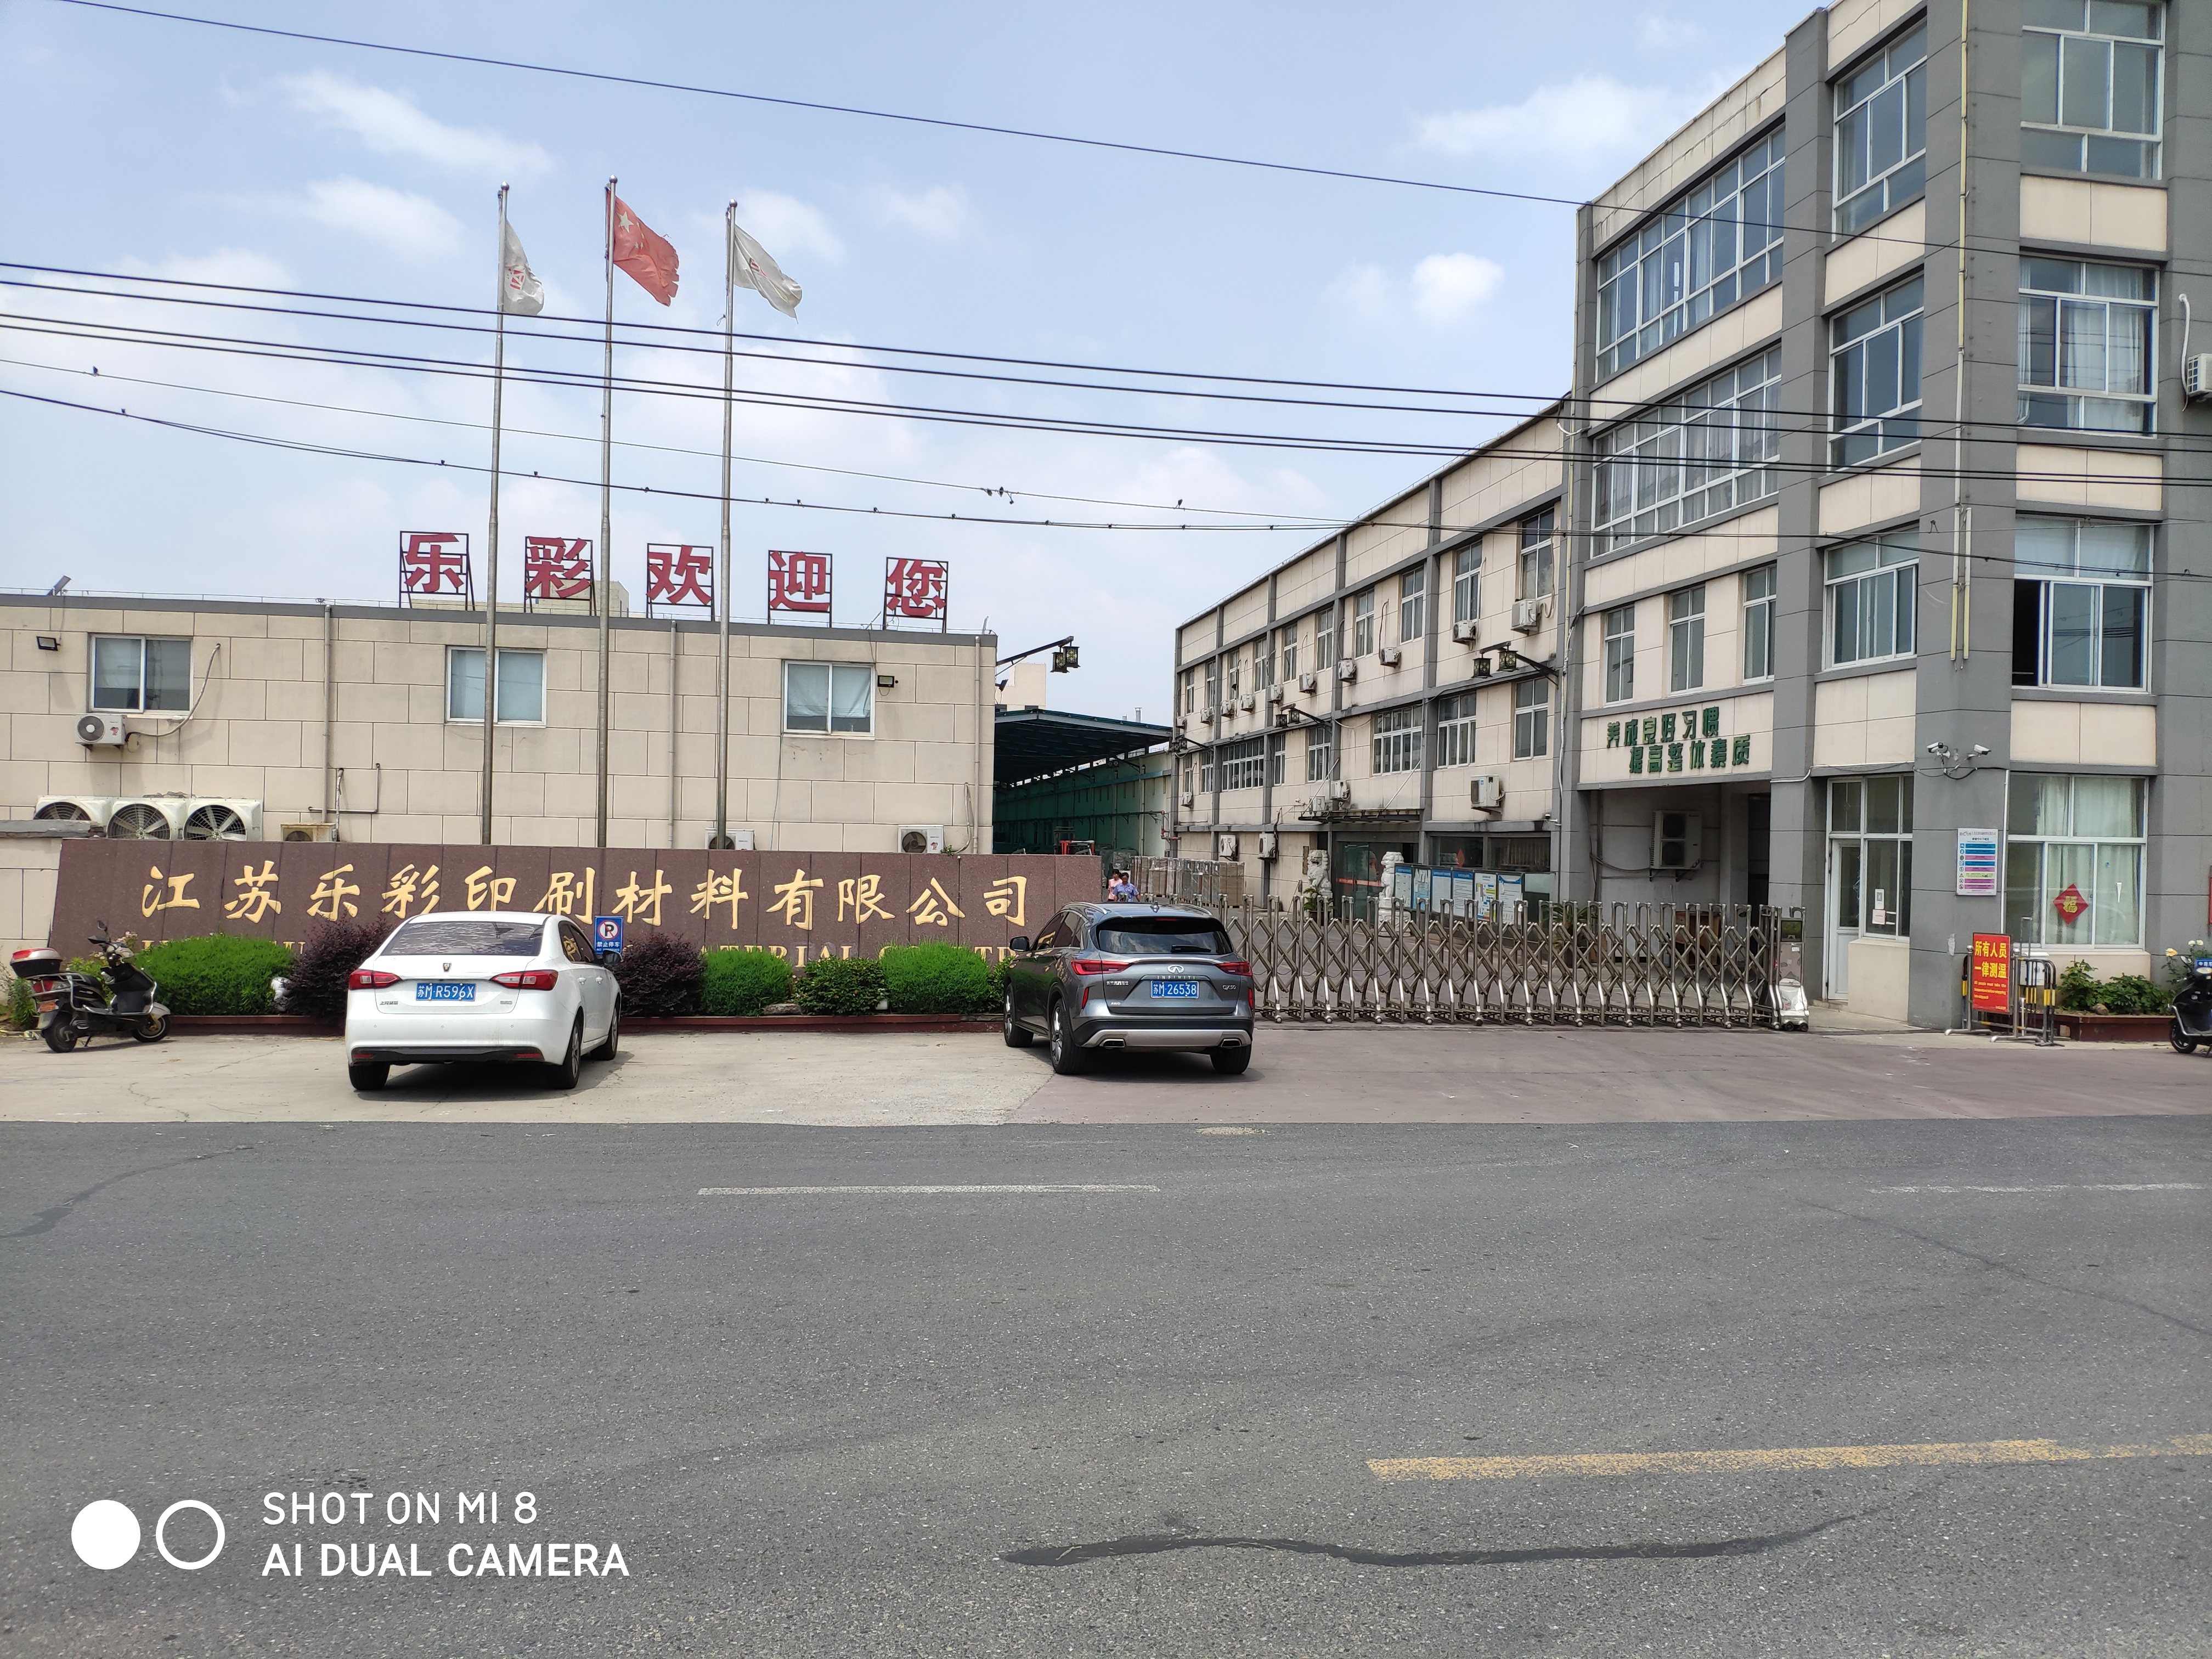 高港区胡庄镇的江苏乐彩印刷材料有限公司，去年有员工132人，其中外来打工人员12人，目前已全部返岗，没有新招员工。